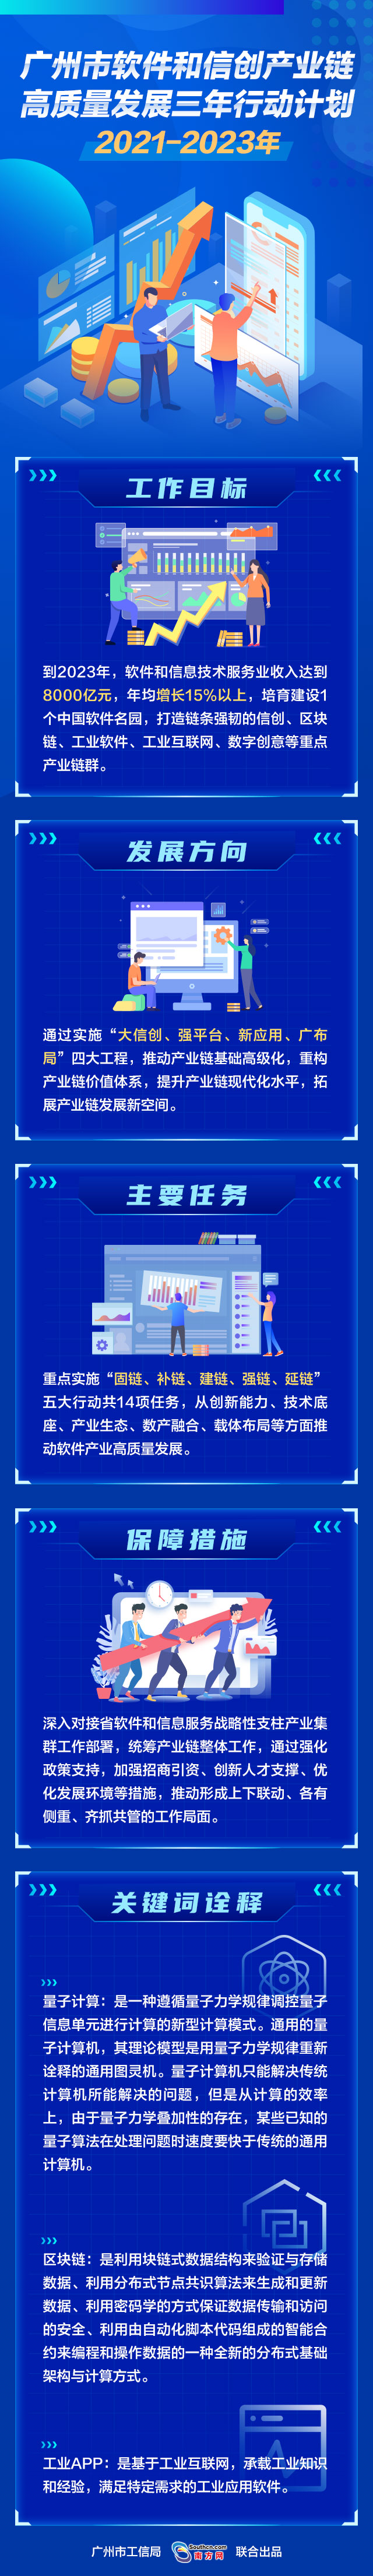 广州市软件和信创产业链高质量发展三年行动计划.jpg